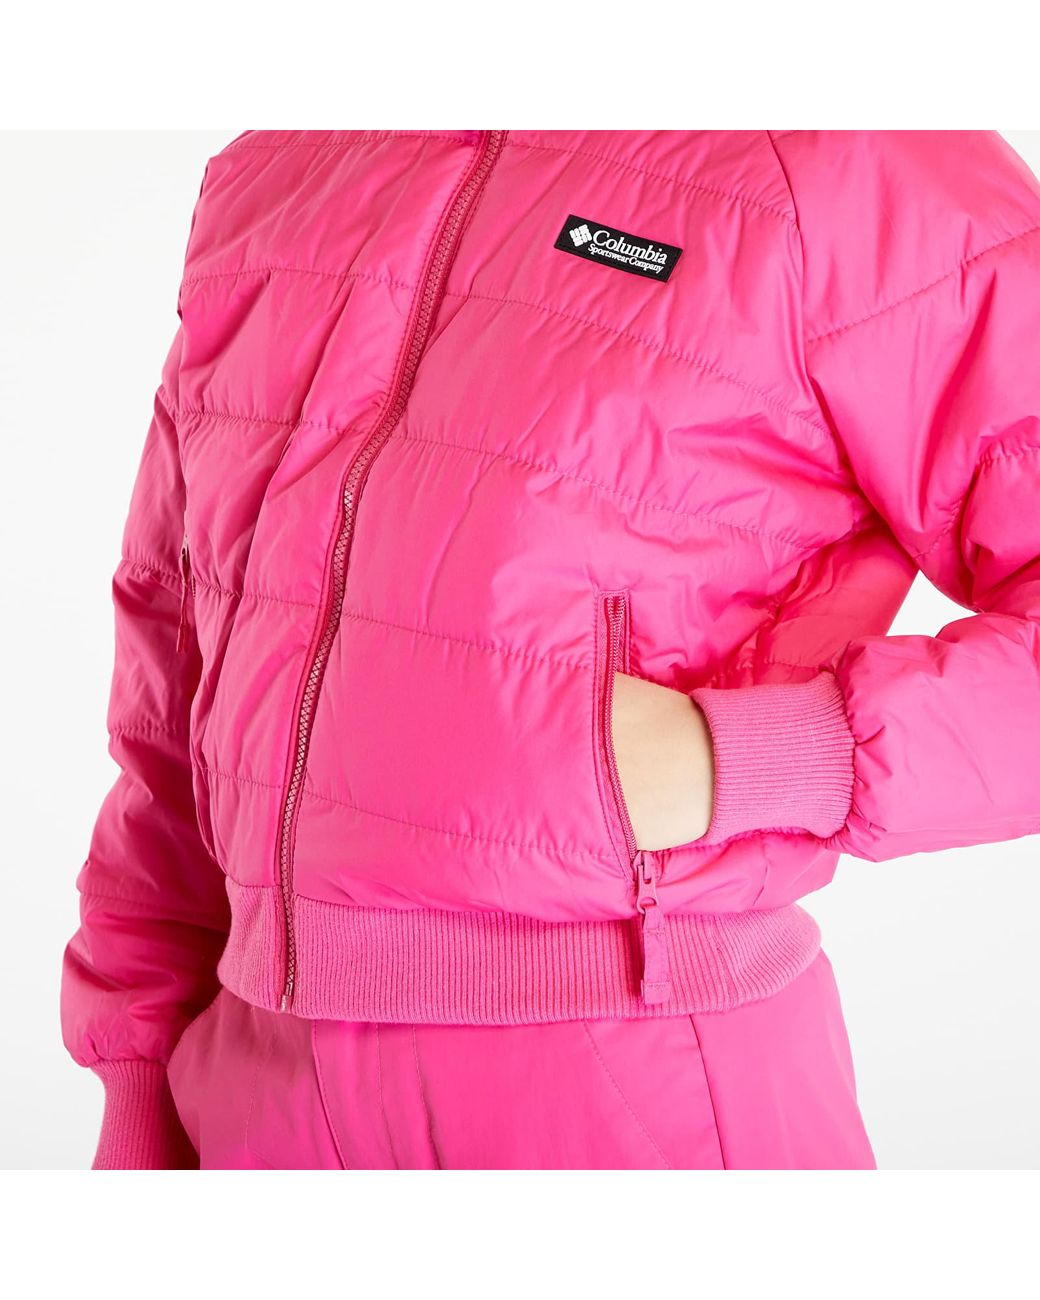 Wintertrainertm Print/ Waterproof Fuchsia Lyst Interchange | Fizz Pink Woven in Nature Jacket 3-in-1 Columbia